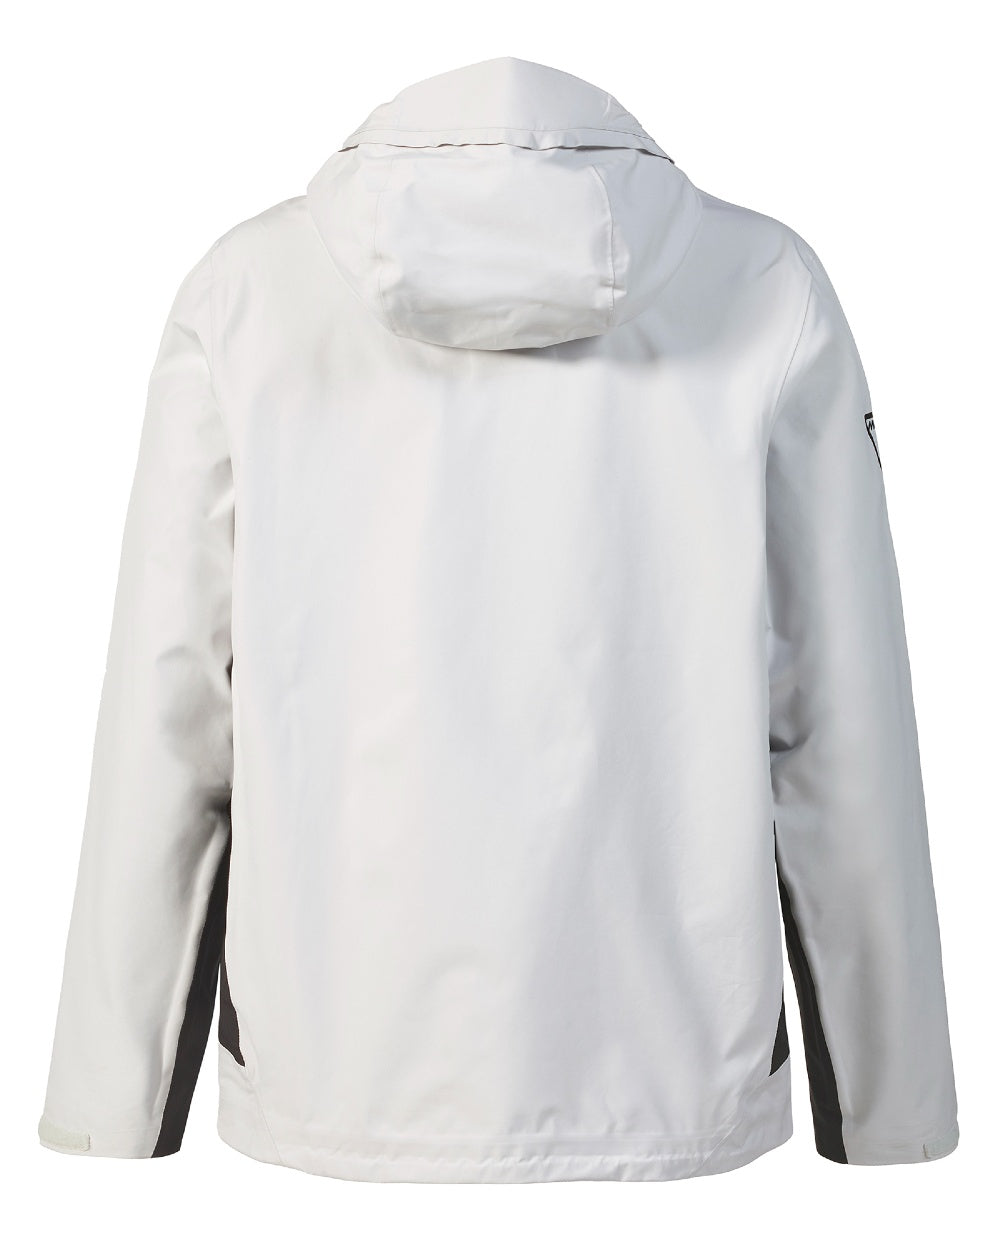 Platinum coloured Musto Mens Lpx Gore-tex Infinium Aero Jacket on white background 